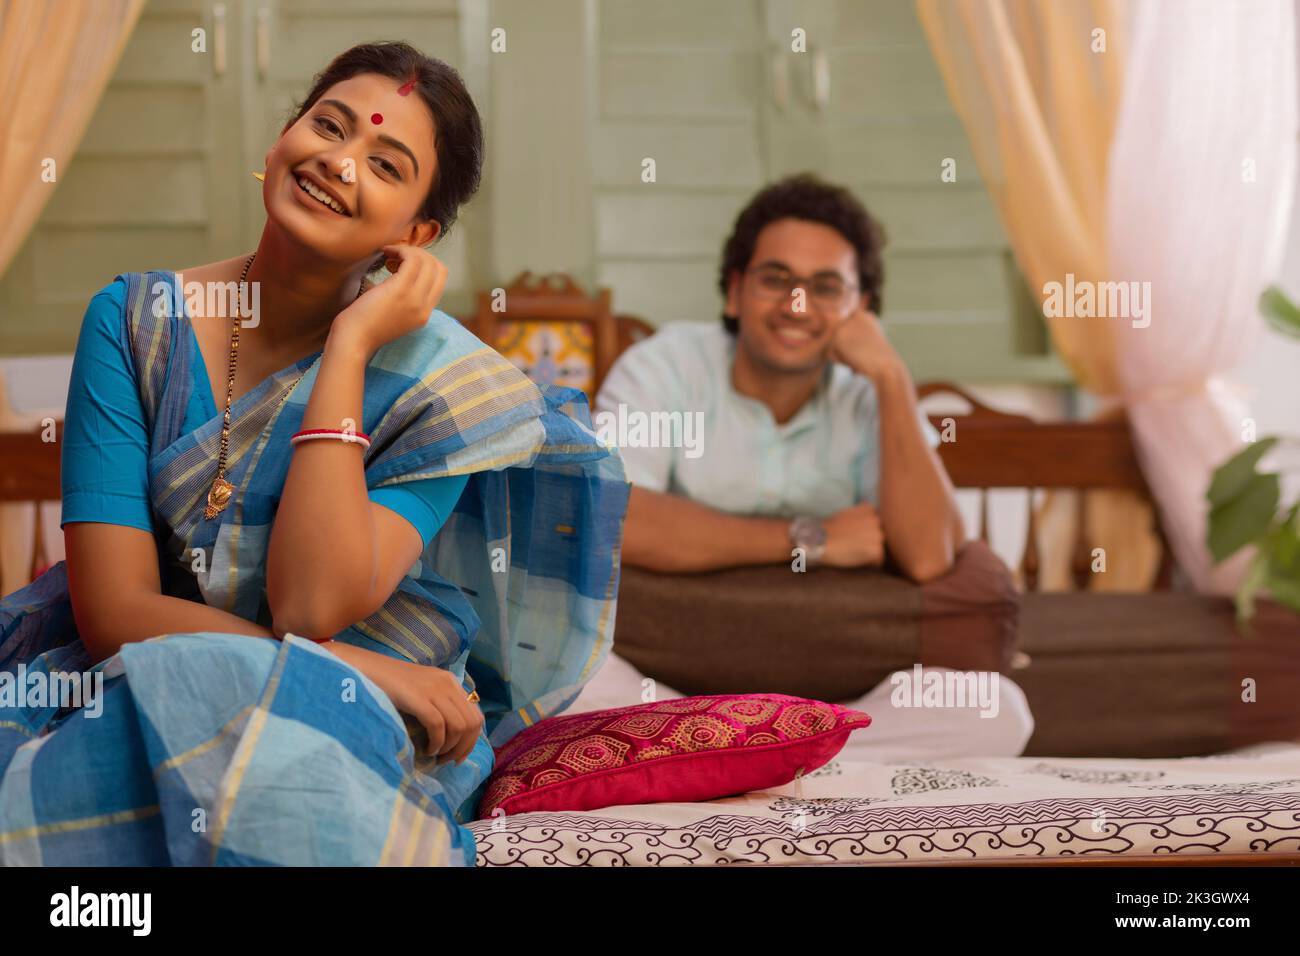 Retrato de una pareja bengalí sentada en la cama Foto de stock